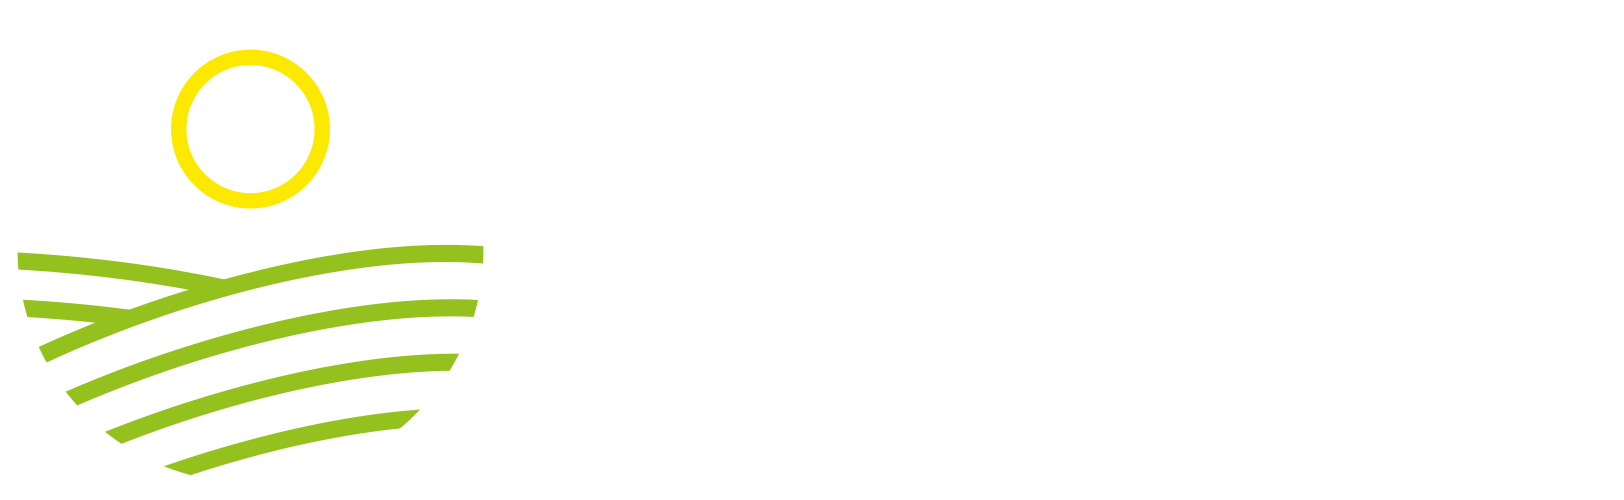 Hope for Tomorrow Global